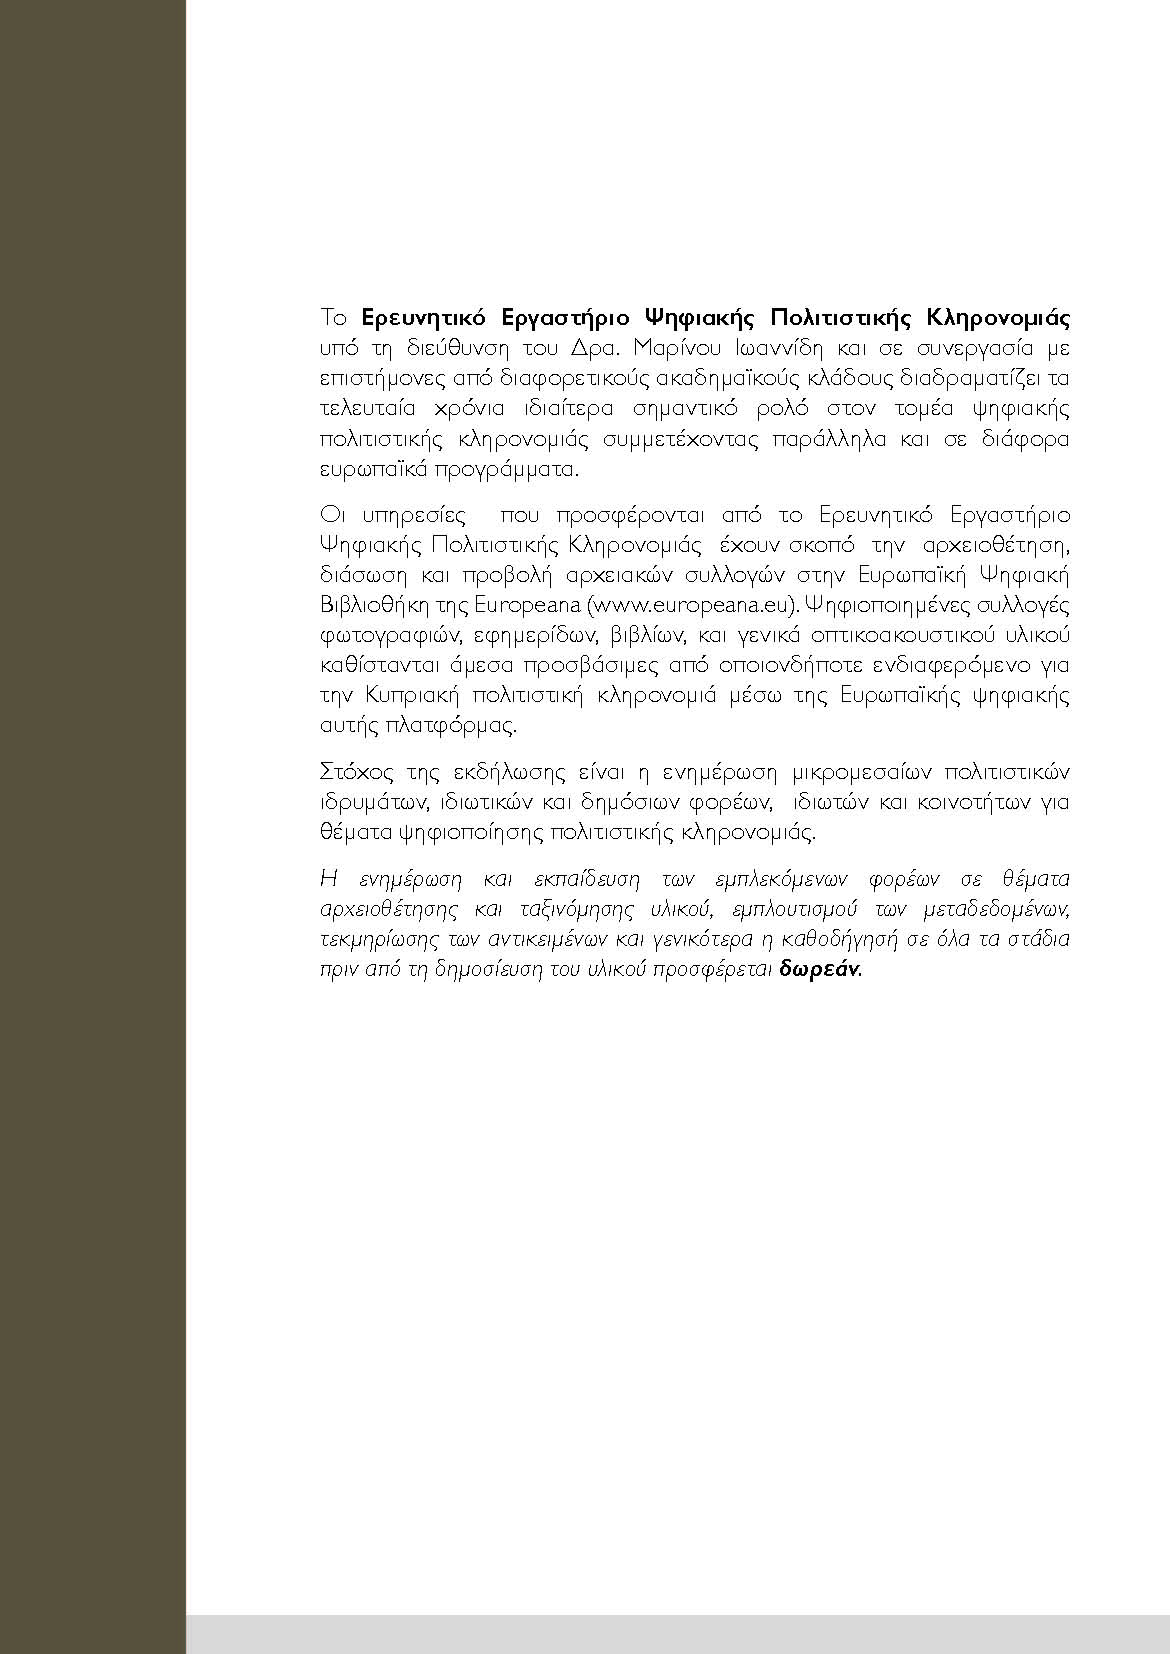 Ψηφιοποιήση και Προβολή Αρχειακών Συλλογών της Κύπρου _Page_2